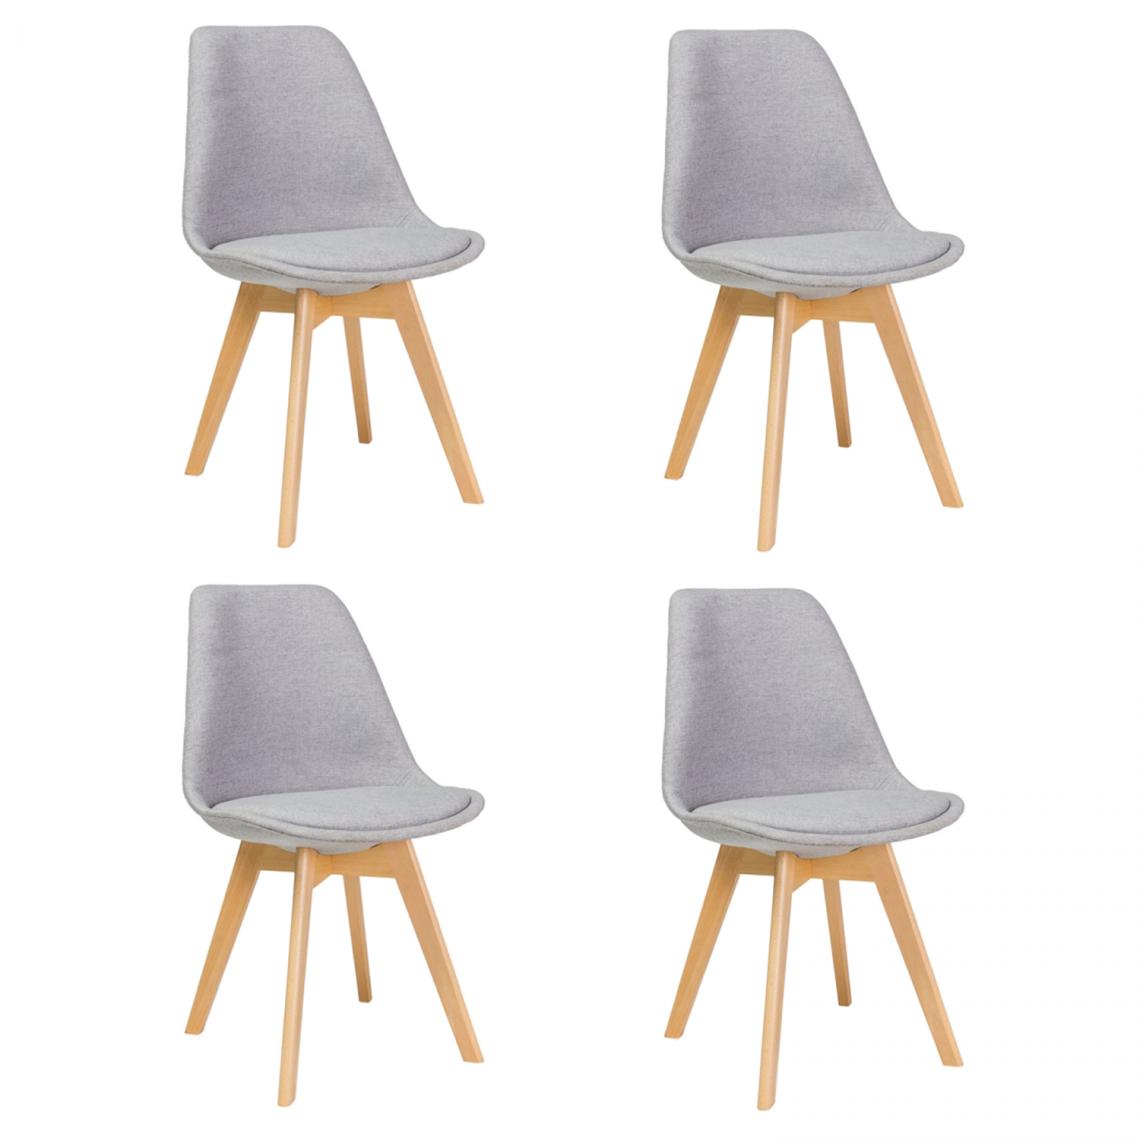 Hucoco - LEONIE - Lot de 4 chaises modernes avec pieds en bois - Dimensions : 86x52x48 cm - Style scandinave - Gris - Chaises